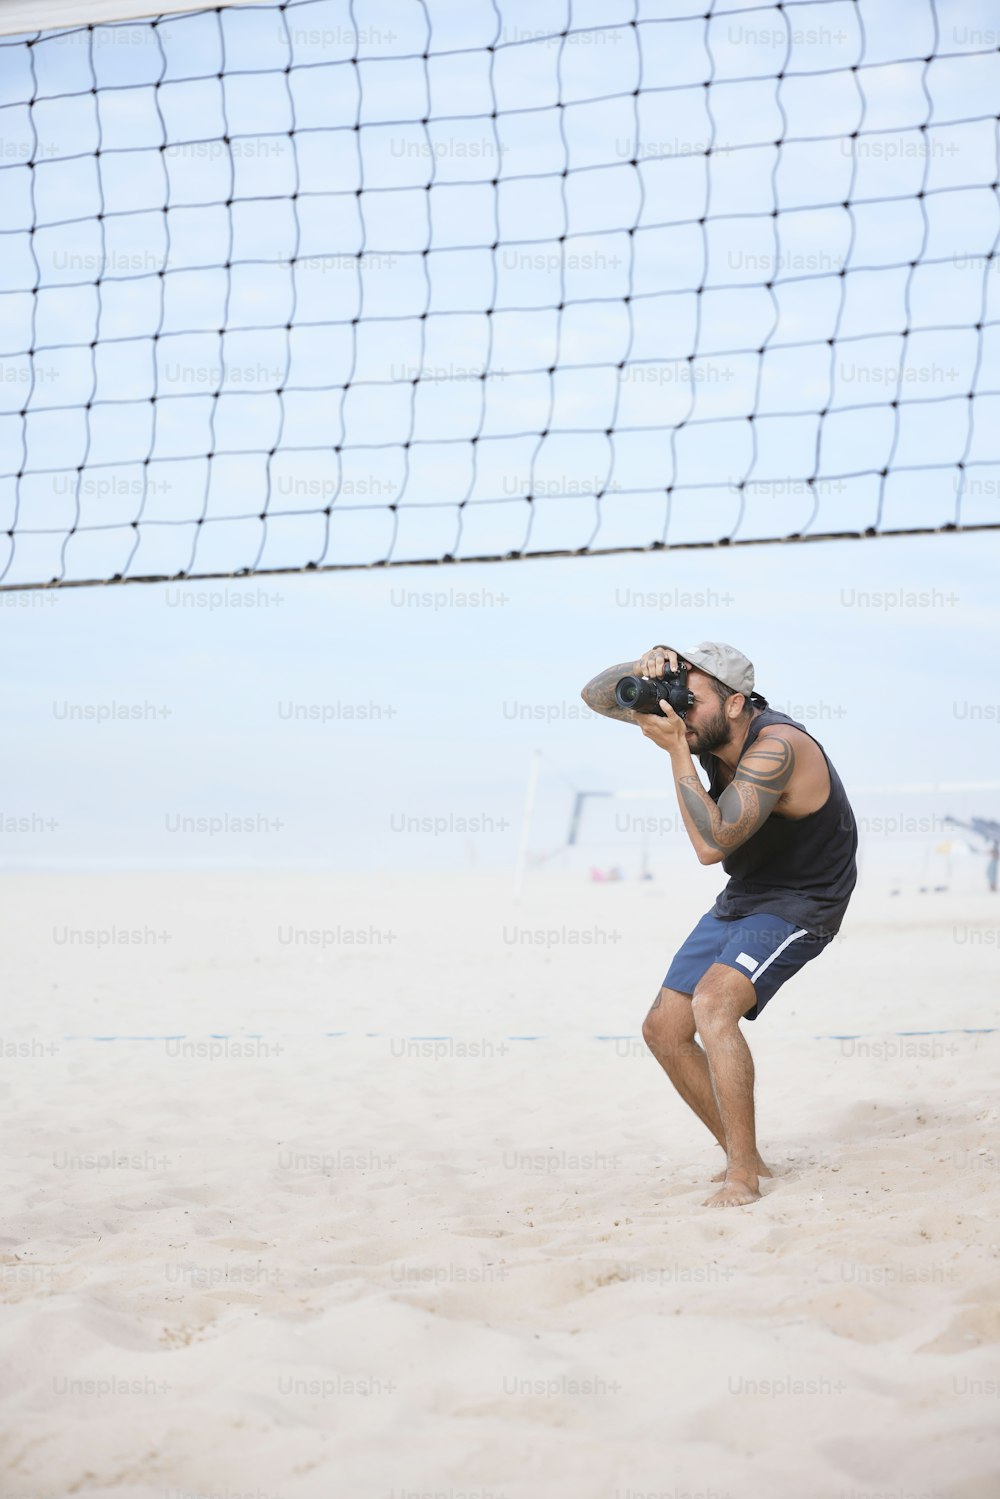 Un hombre parado en una playa junto a una red de voleibol